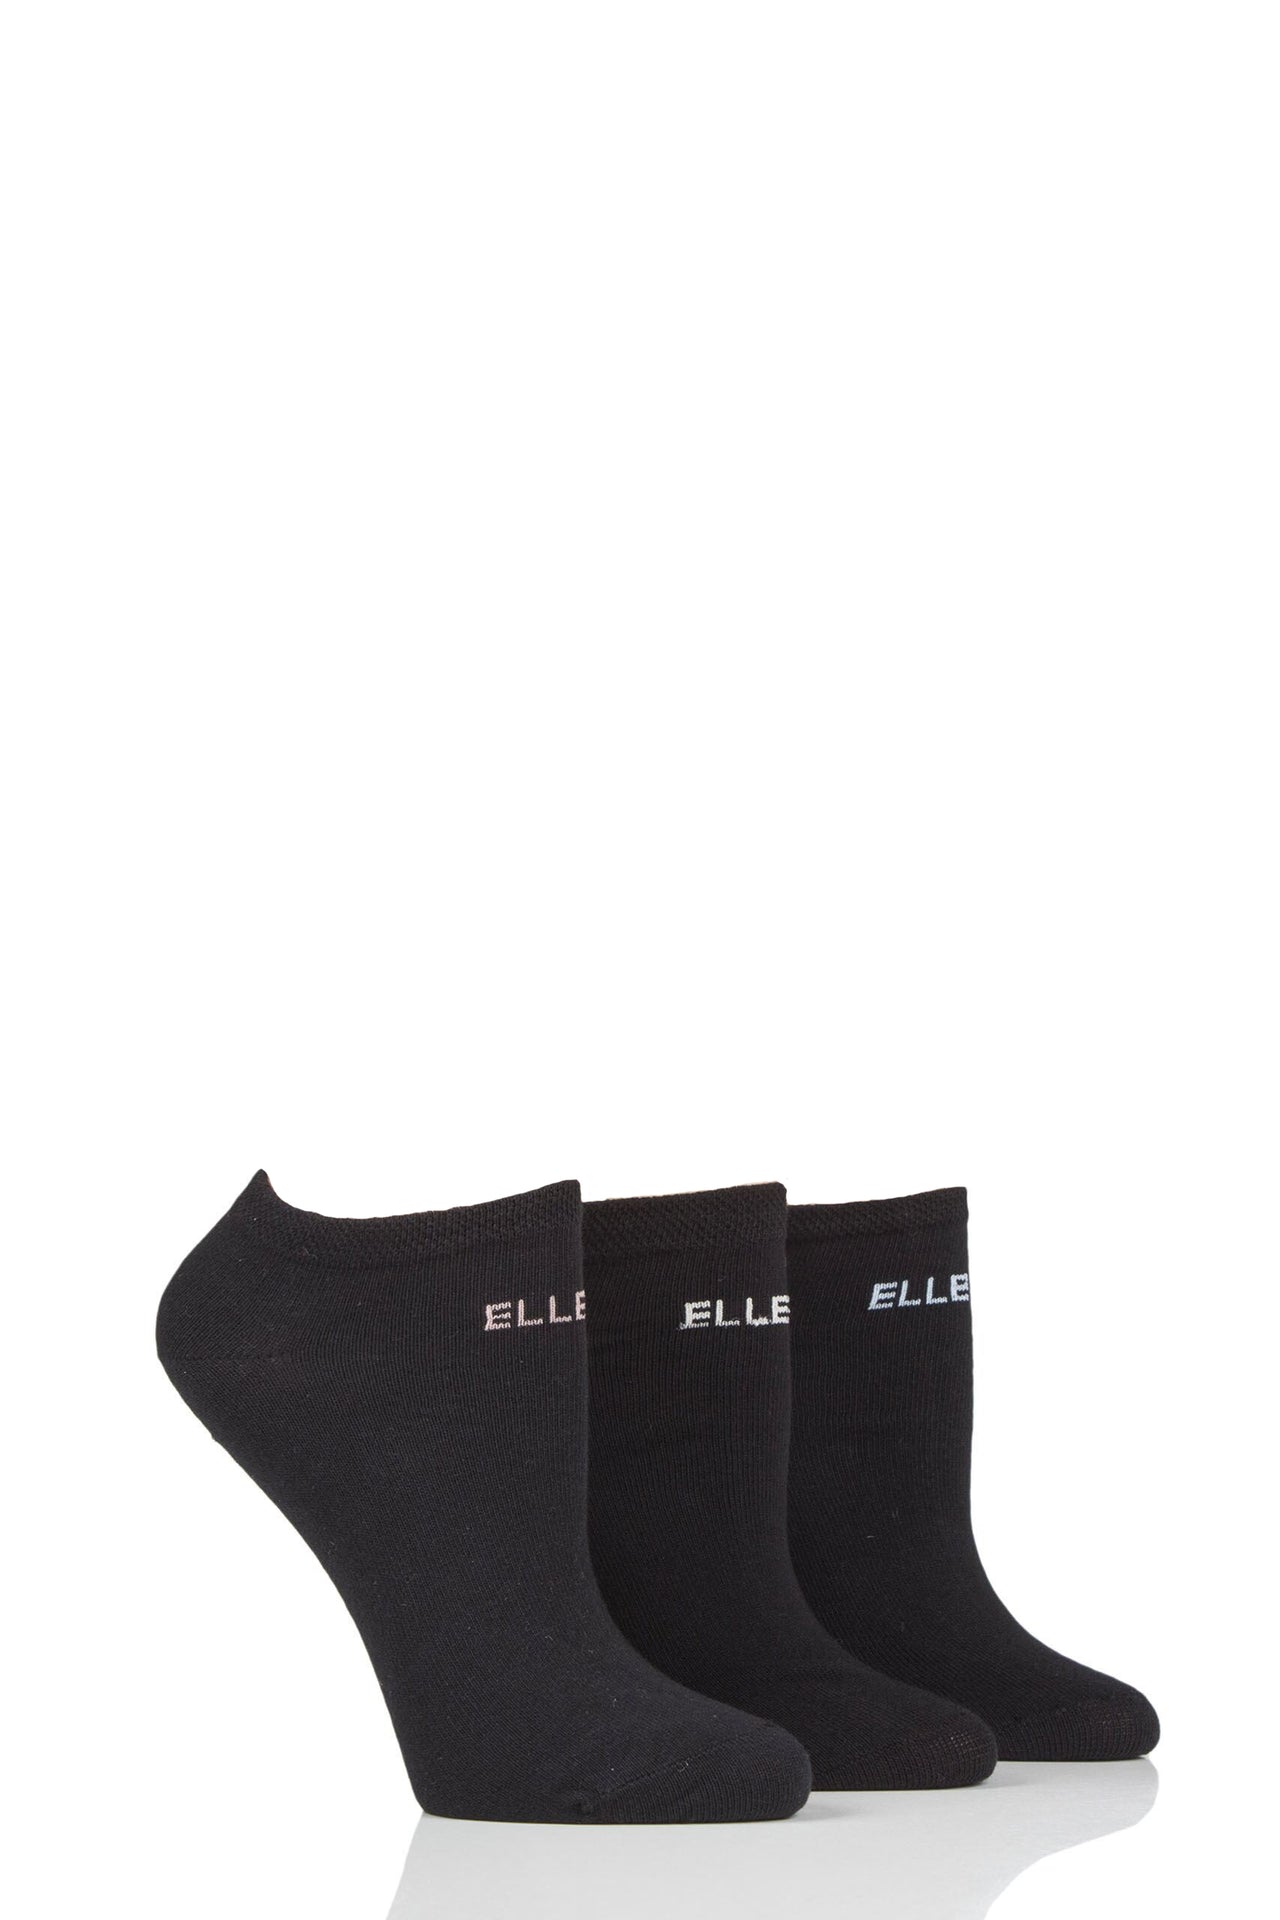 Elle No-Show Cotton Mix Trainer Socks Black